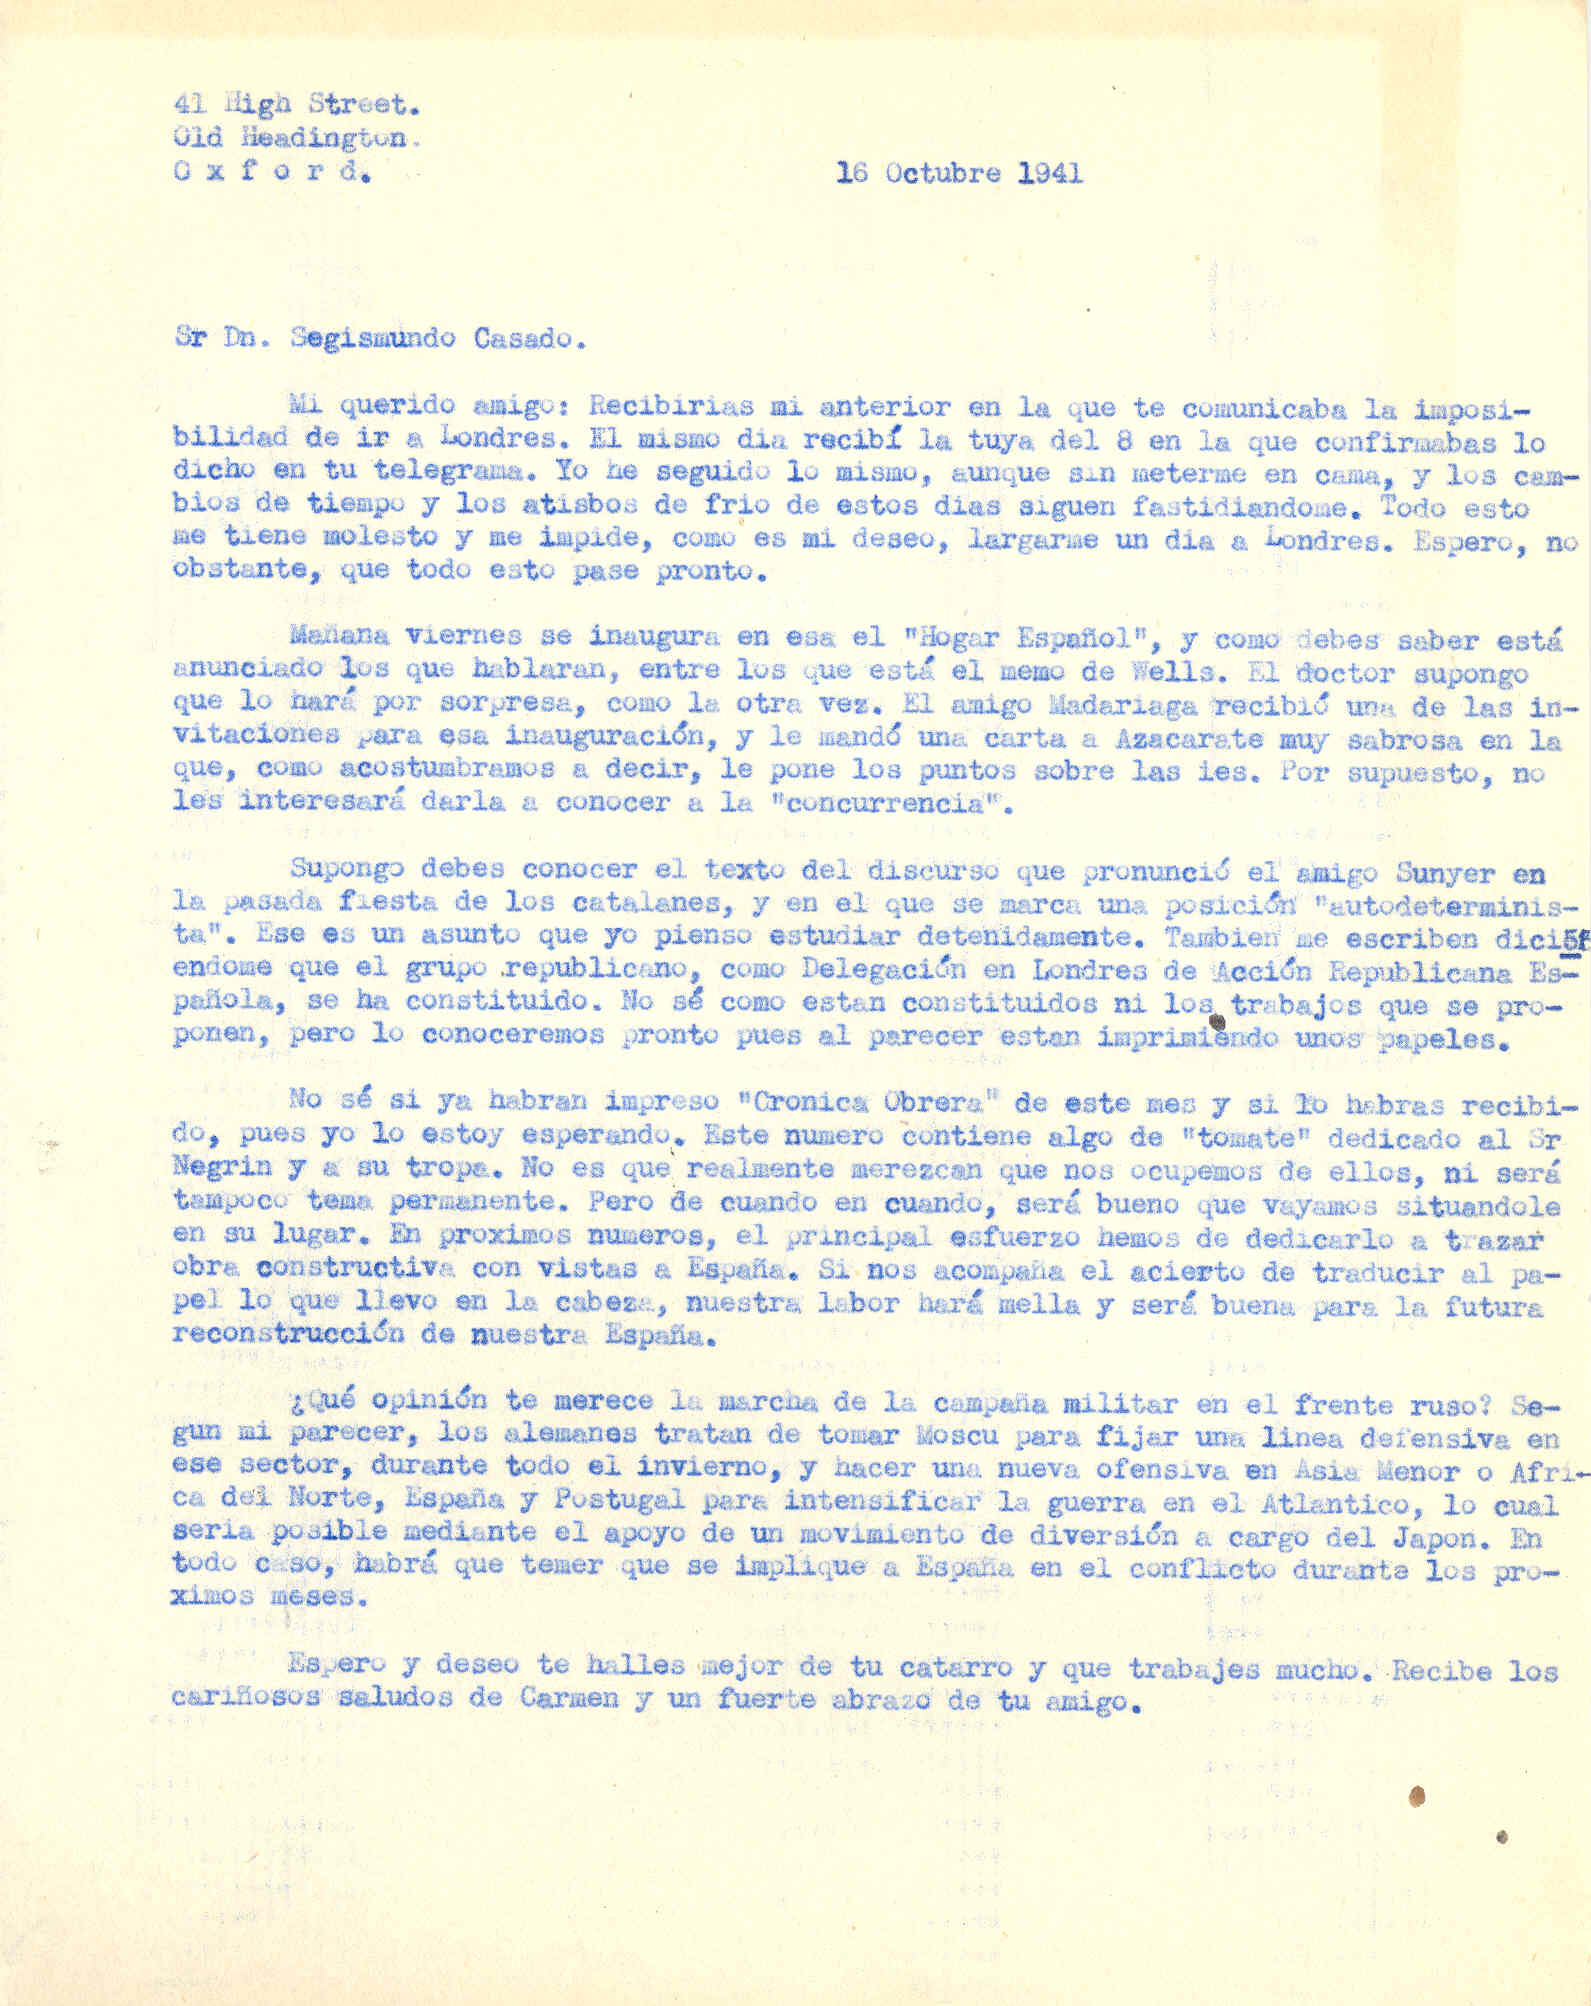 Carta a Segismundo Casado en la que habla de la inauguración del Hogar Español, del discurso que pronunció Pi i Sunyer y la campaña militar en el frente ruso